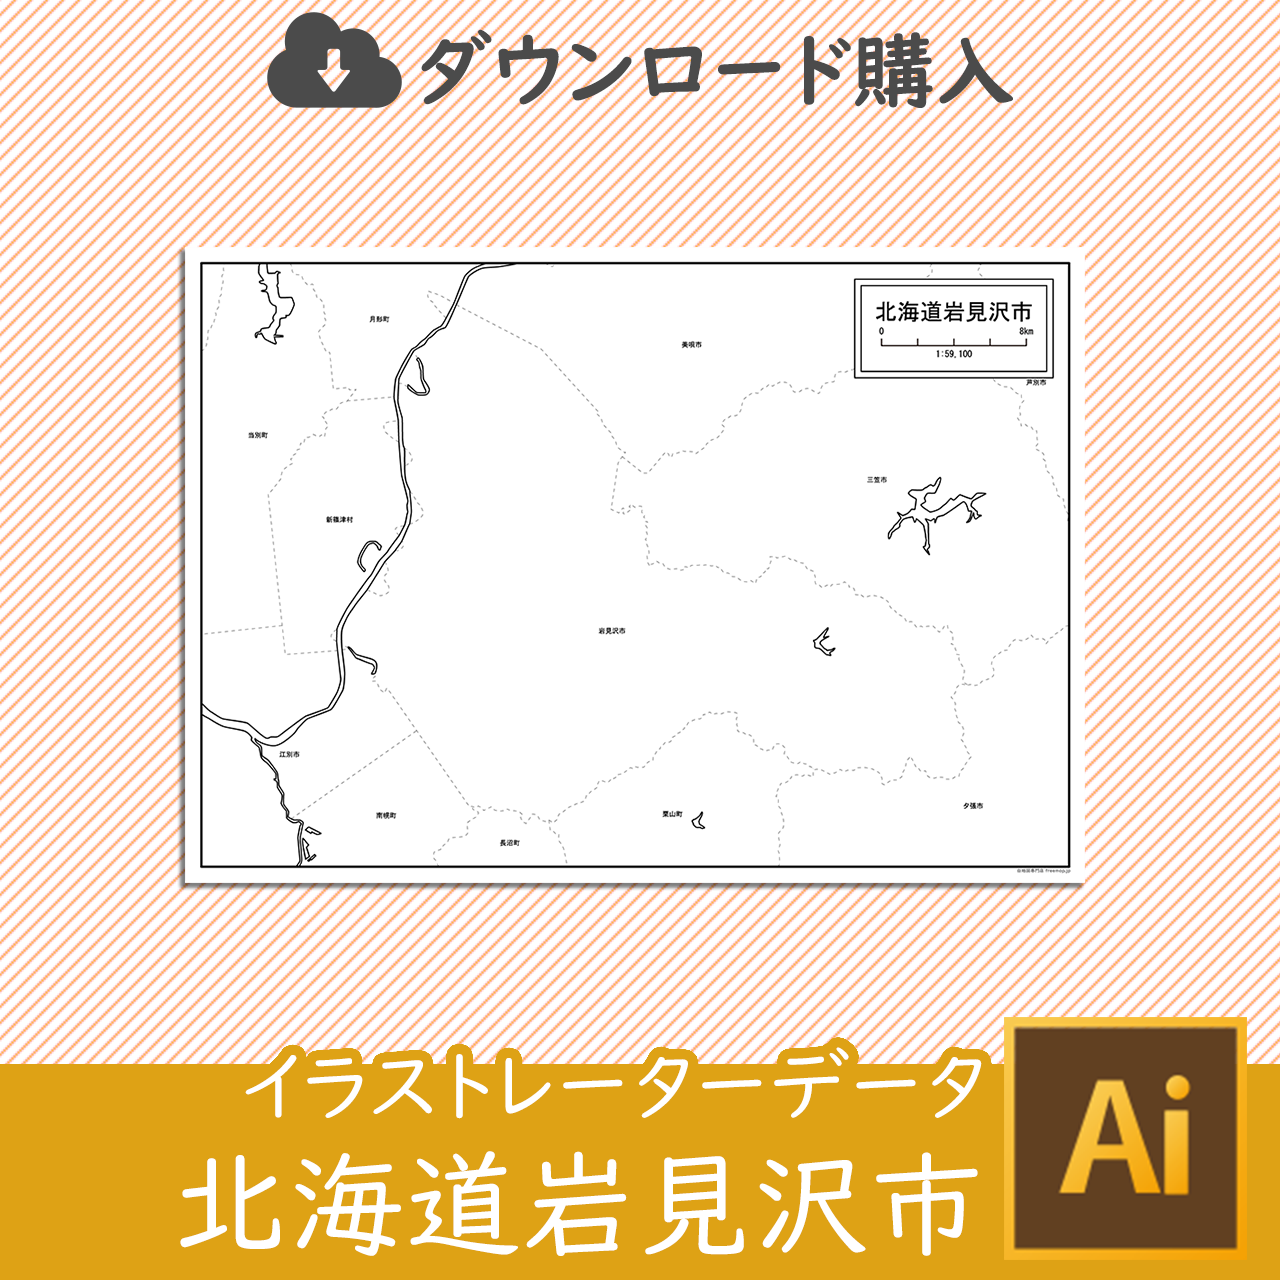 岩見沢市の白地図のサムネイル